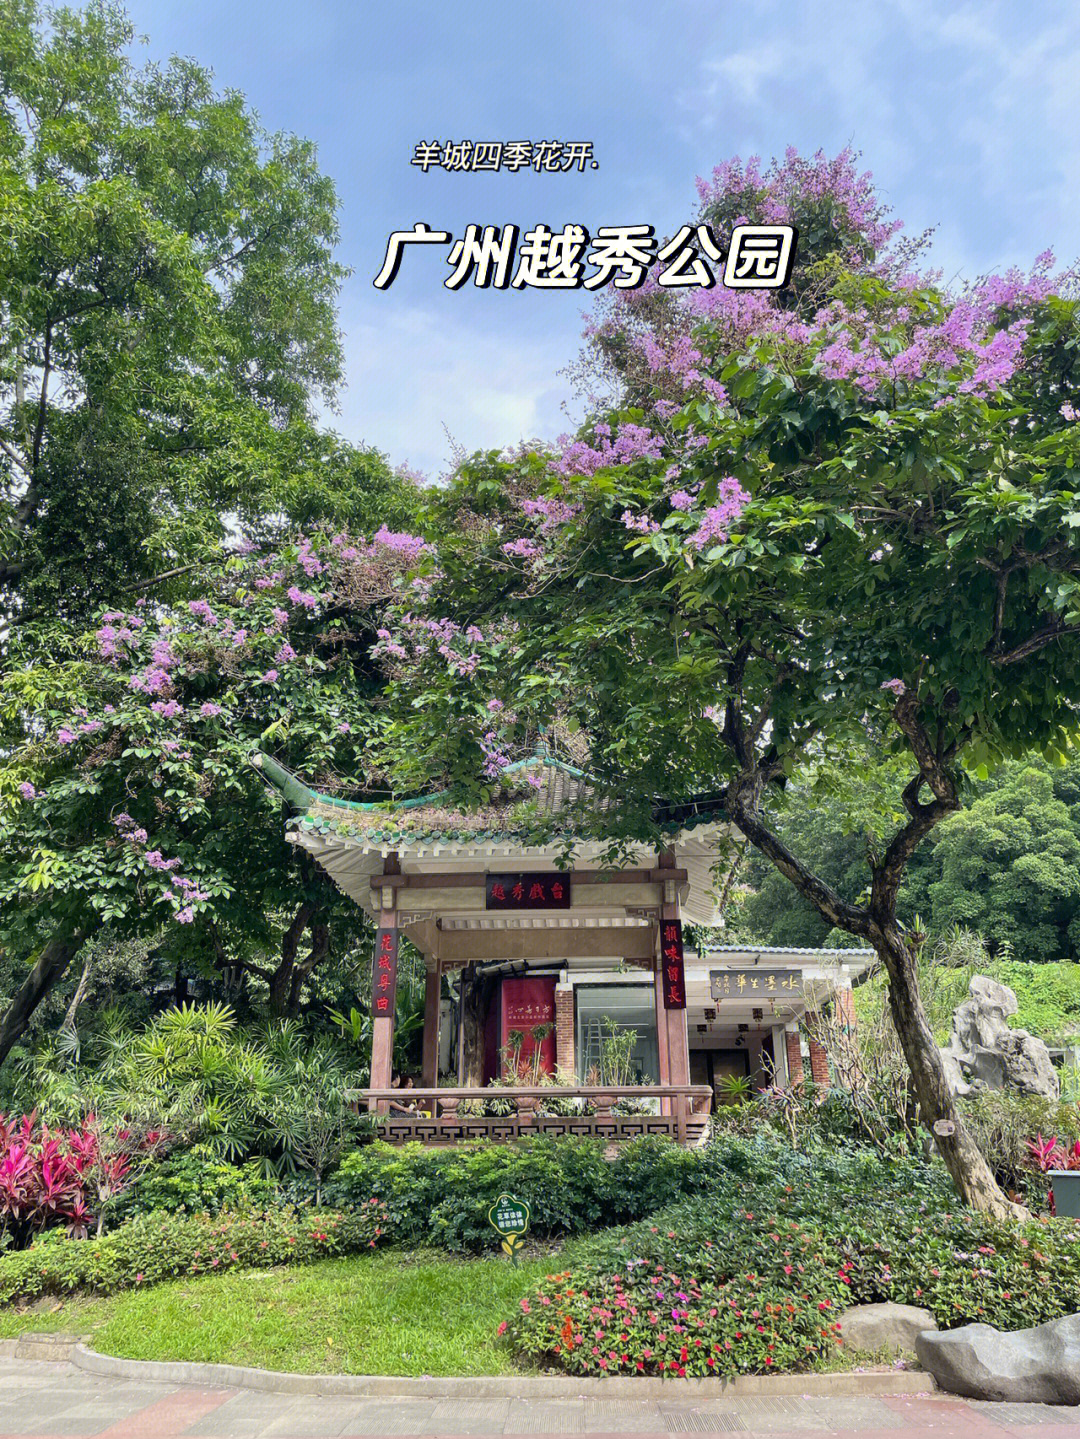 广州市越秀公园景点图片